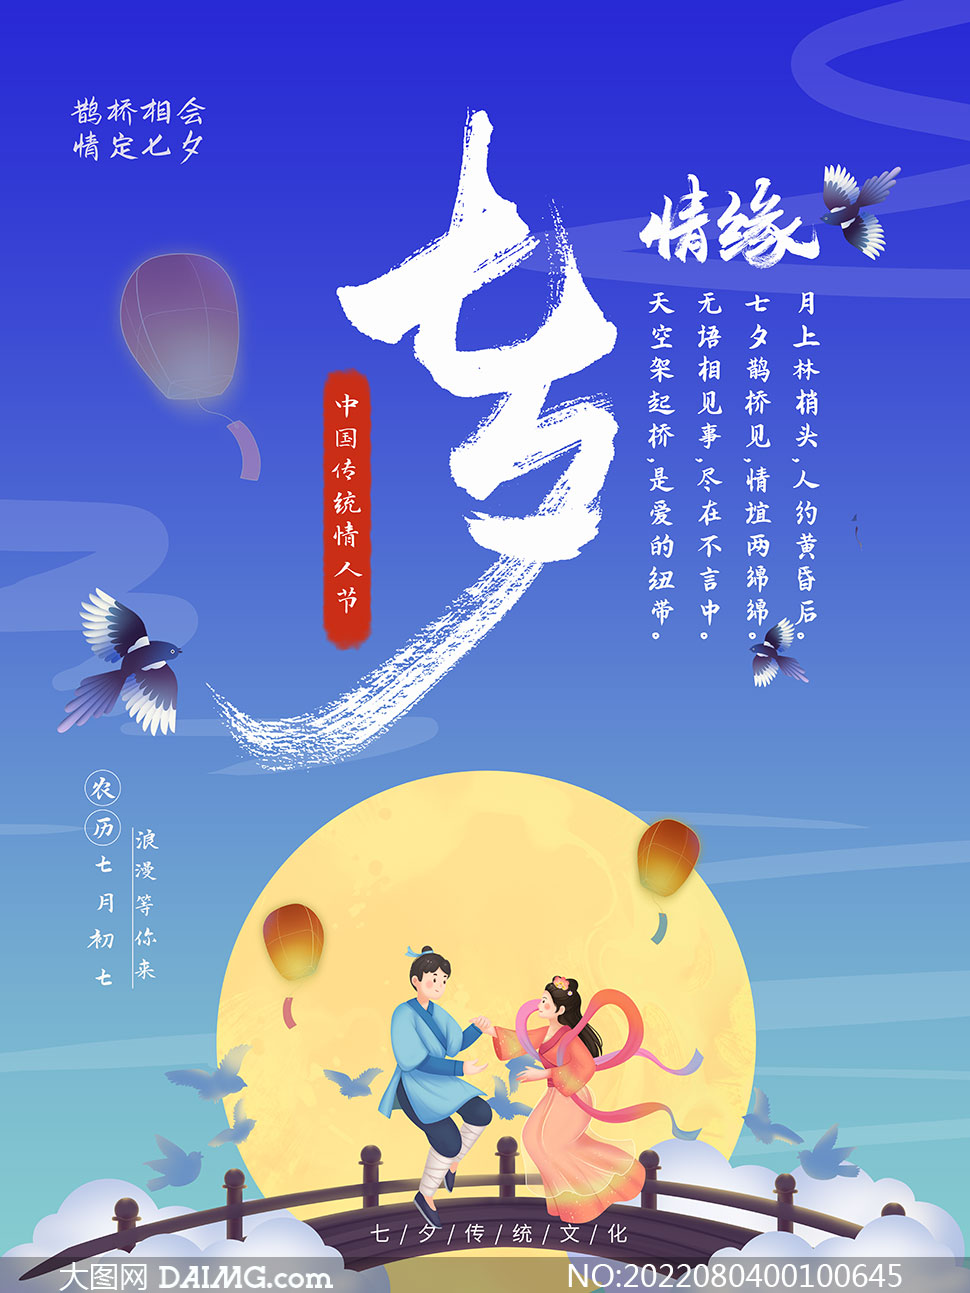 七夕情缘活动宣传海报设计PSD素材